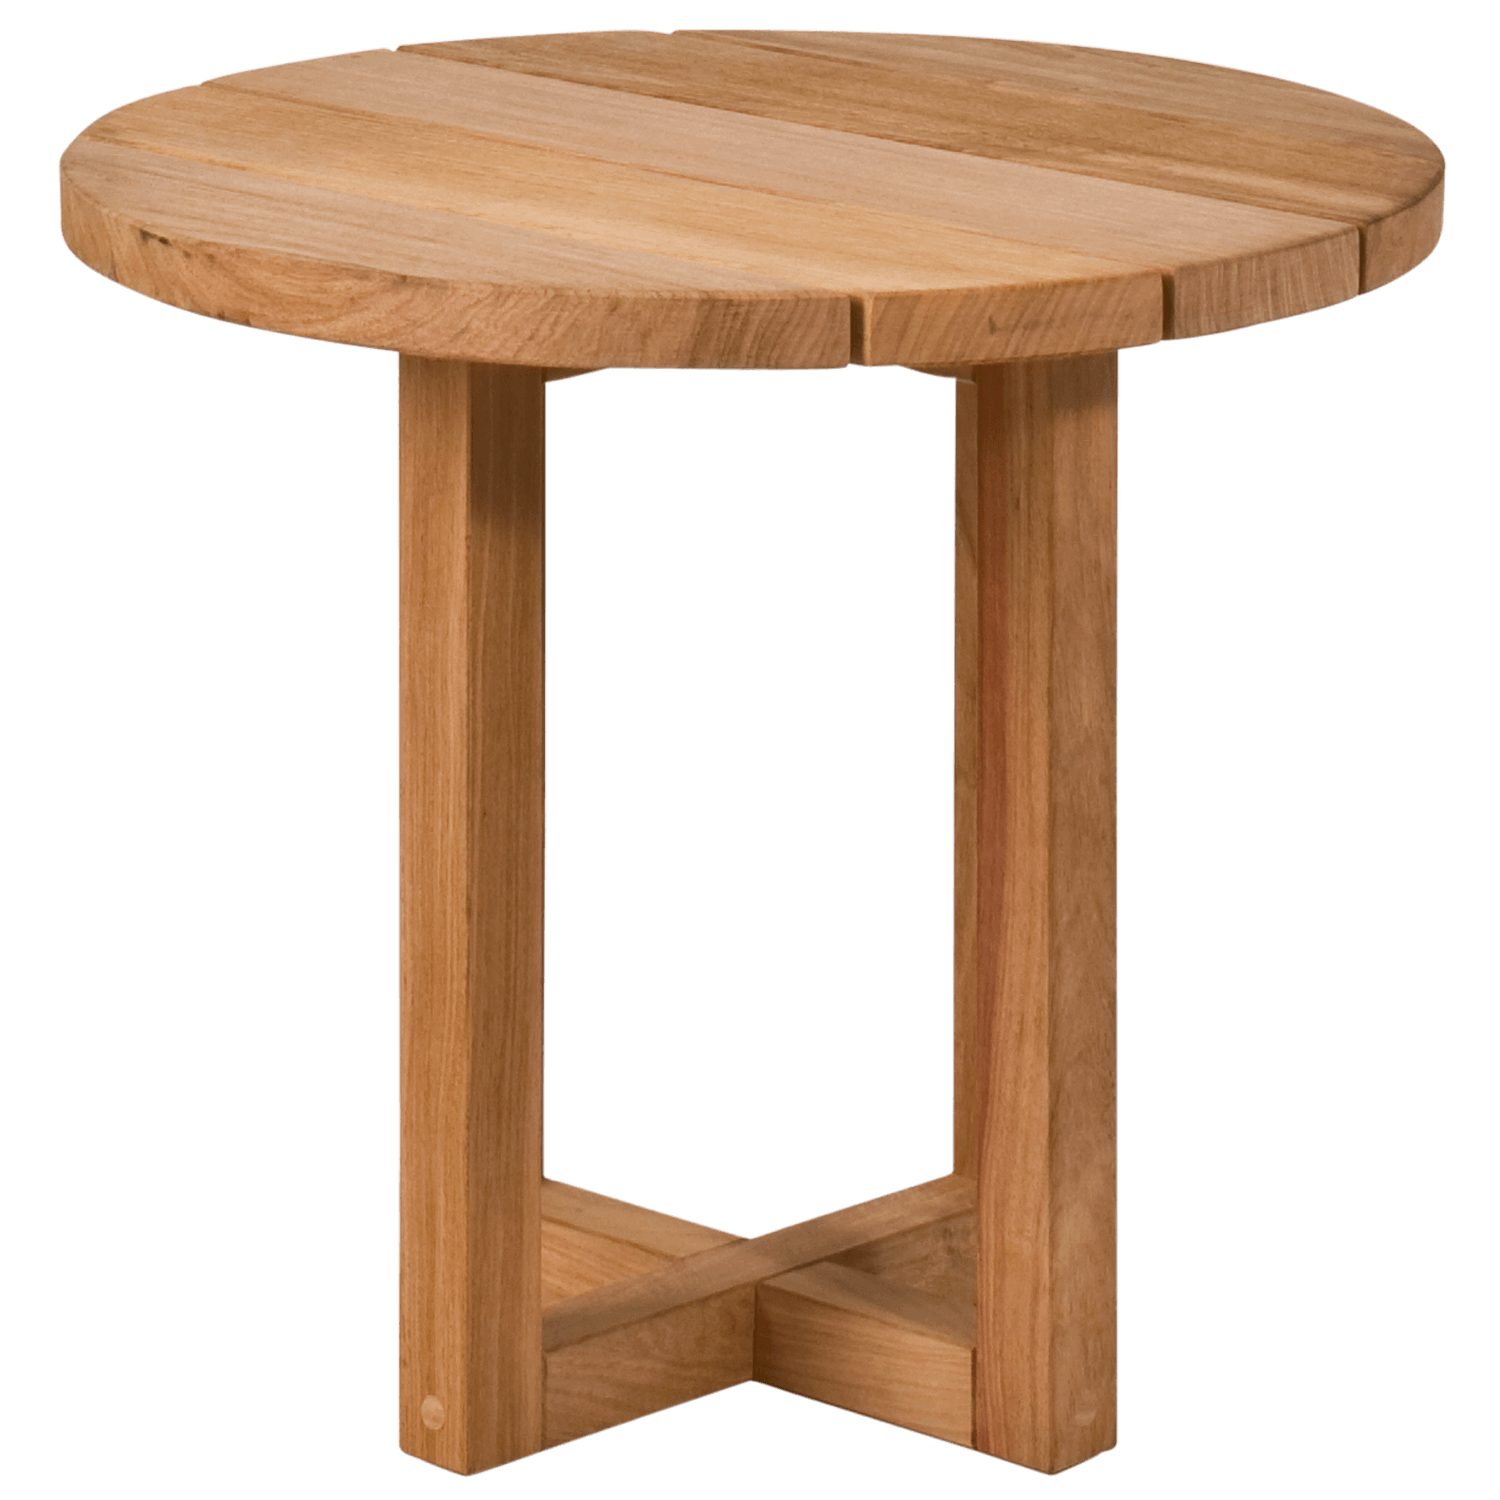 Стол фото пнг. Столик. Столик без фона. Деревянный стол без фона. Деревянный столик для фотошопа.